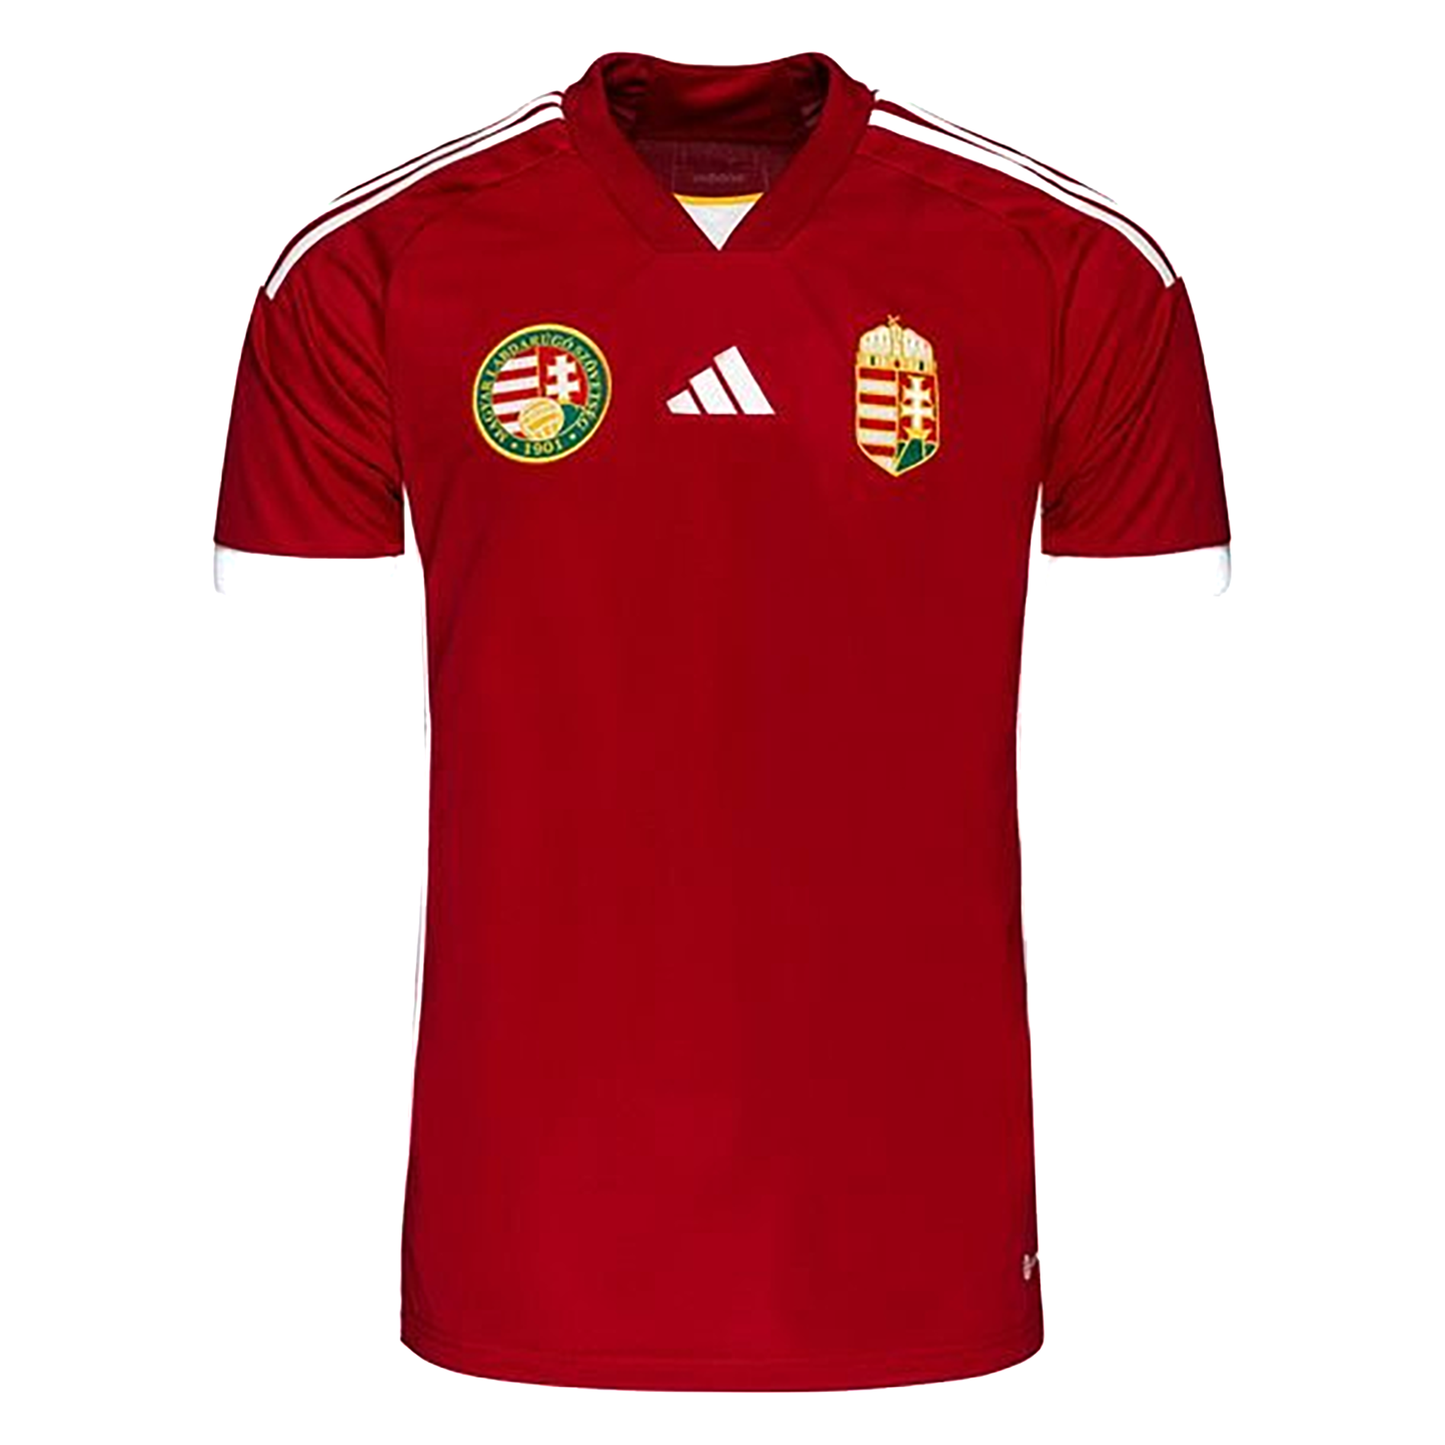 Hungary shirt